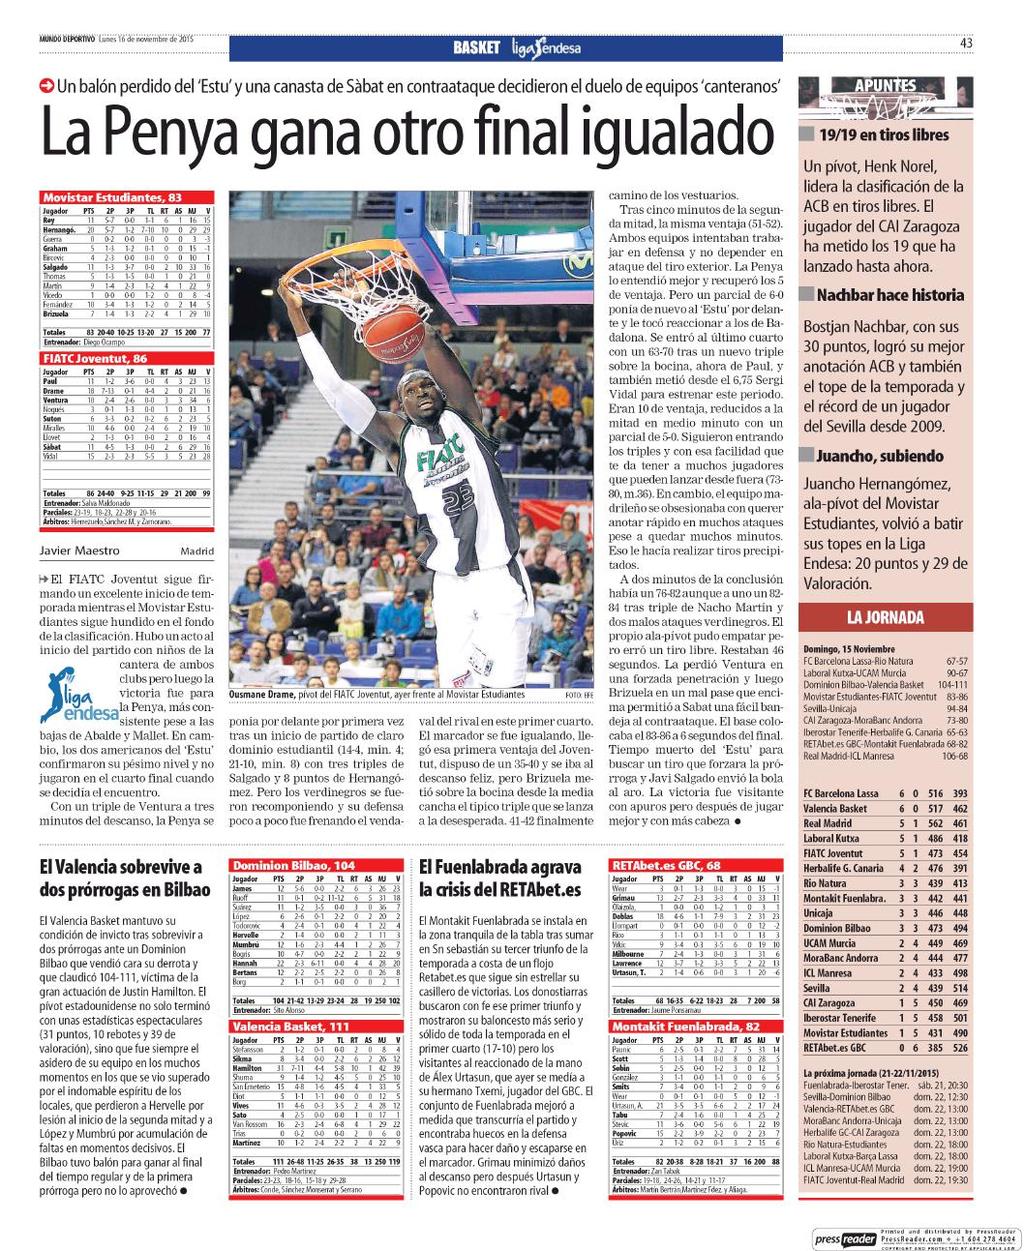 16/11/2015 Kiosko y Más Mundo Deportivo 16 nov. 2015 Page #43 http://lector.kioskoymas.